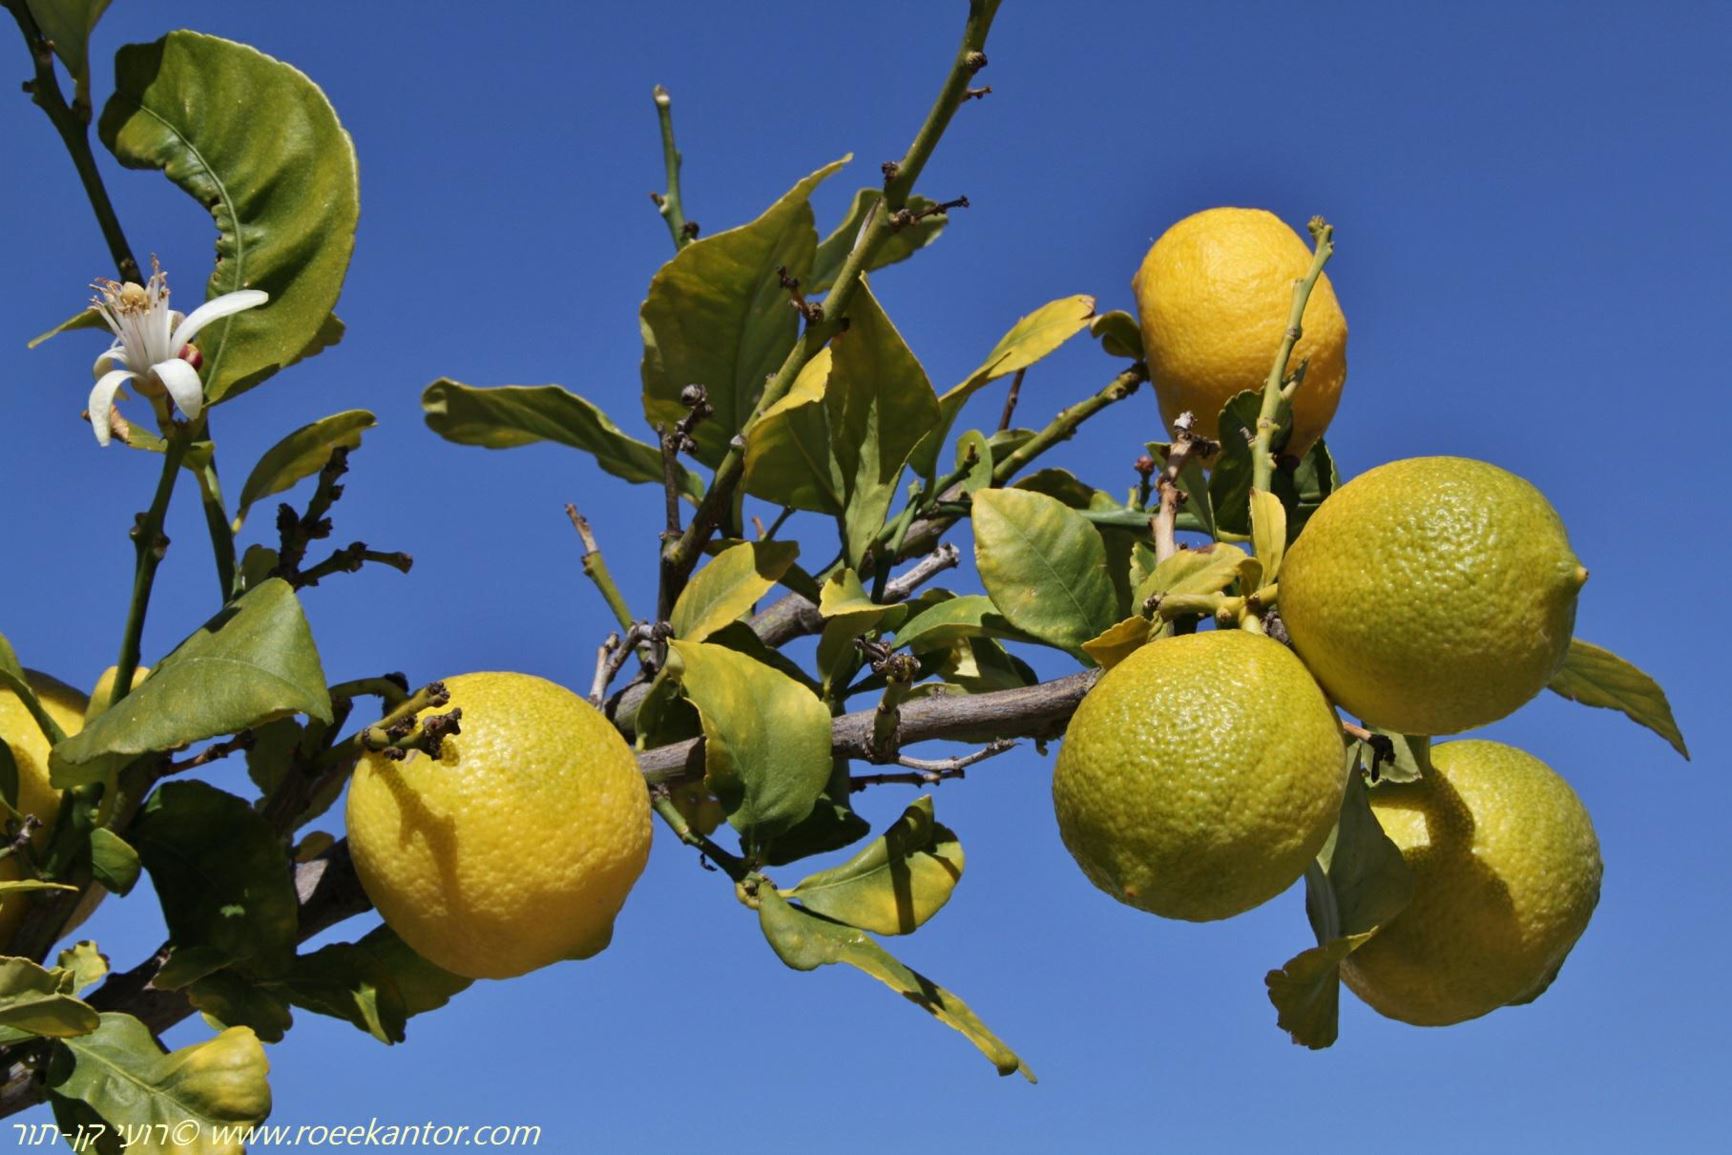 Citrus limon - Lemon, הדר הלימון, הדר  הלימון, הדר הלימון